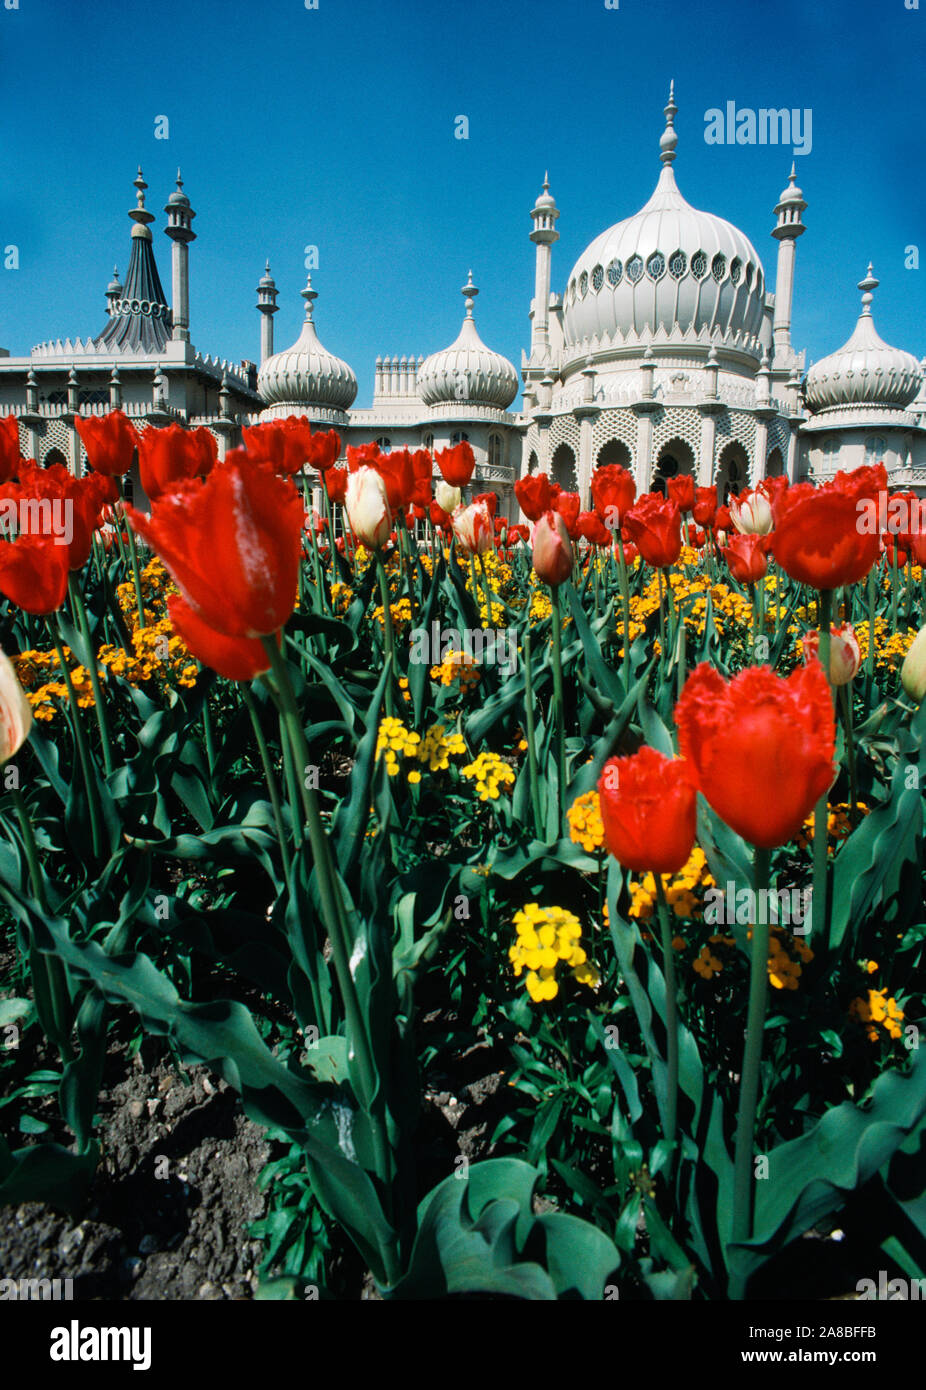 Royal Pavilion, Brighton, East Sussex, England, UK Stock Photo